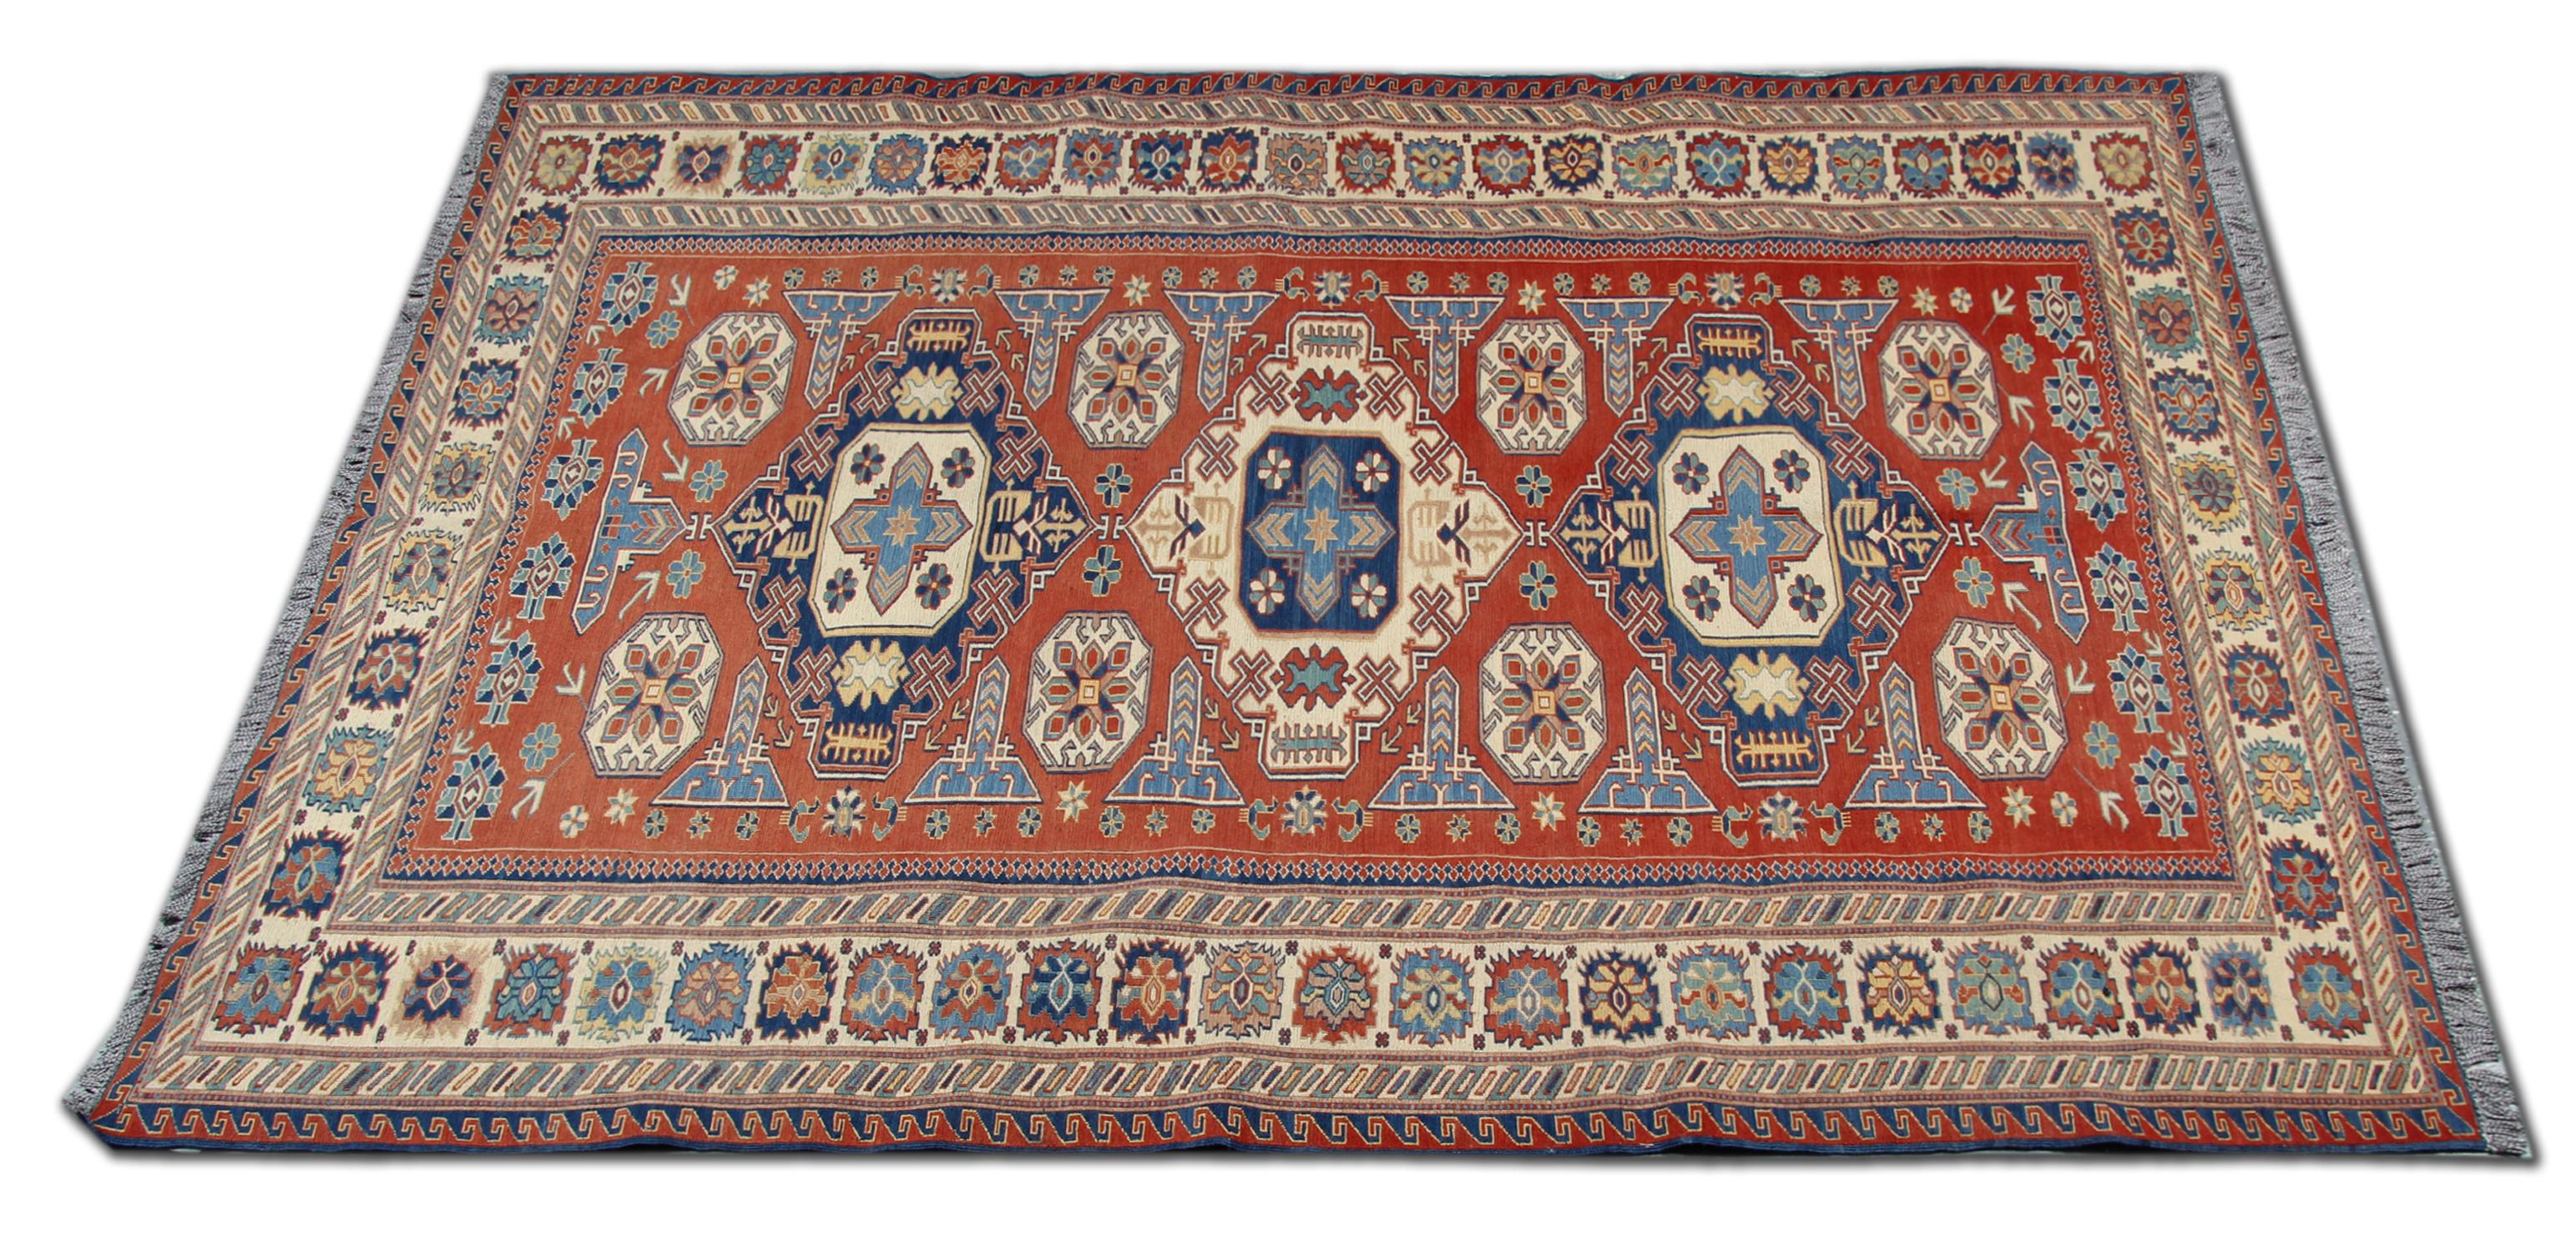 Dieses Stück wurde 1950 in Afghanistan von Hand gewebt und zeigt ein elegantes Stammesmedaillon-Muster mit cremefarbenen und blauen Akzenten auf einem rostfarbenen Hintergrund. Das symmetrische Muster in der Mitte wird von einer Bordüre mit